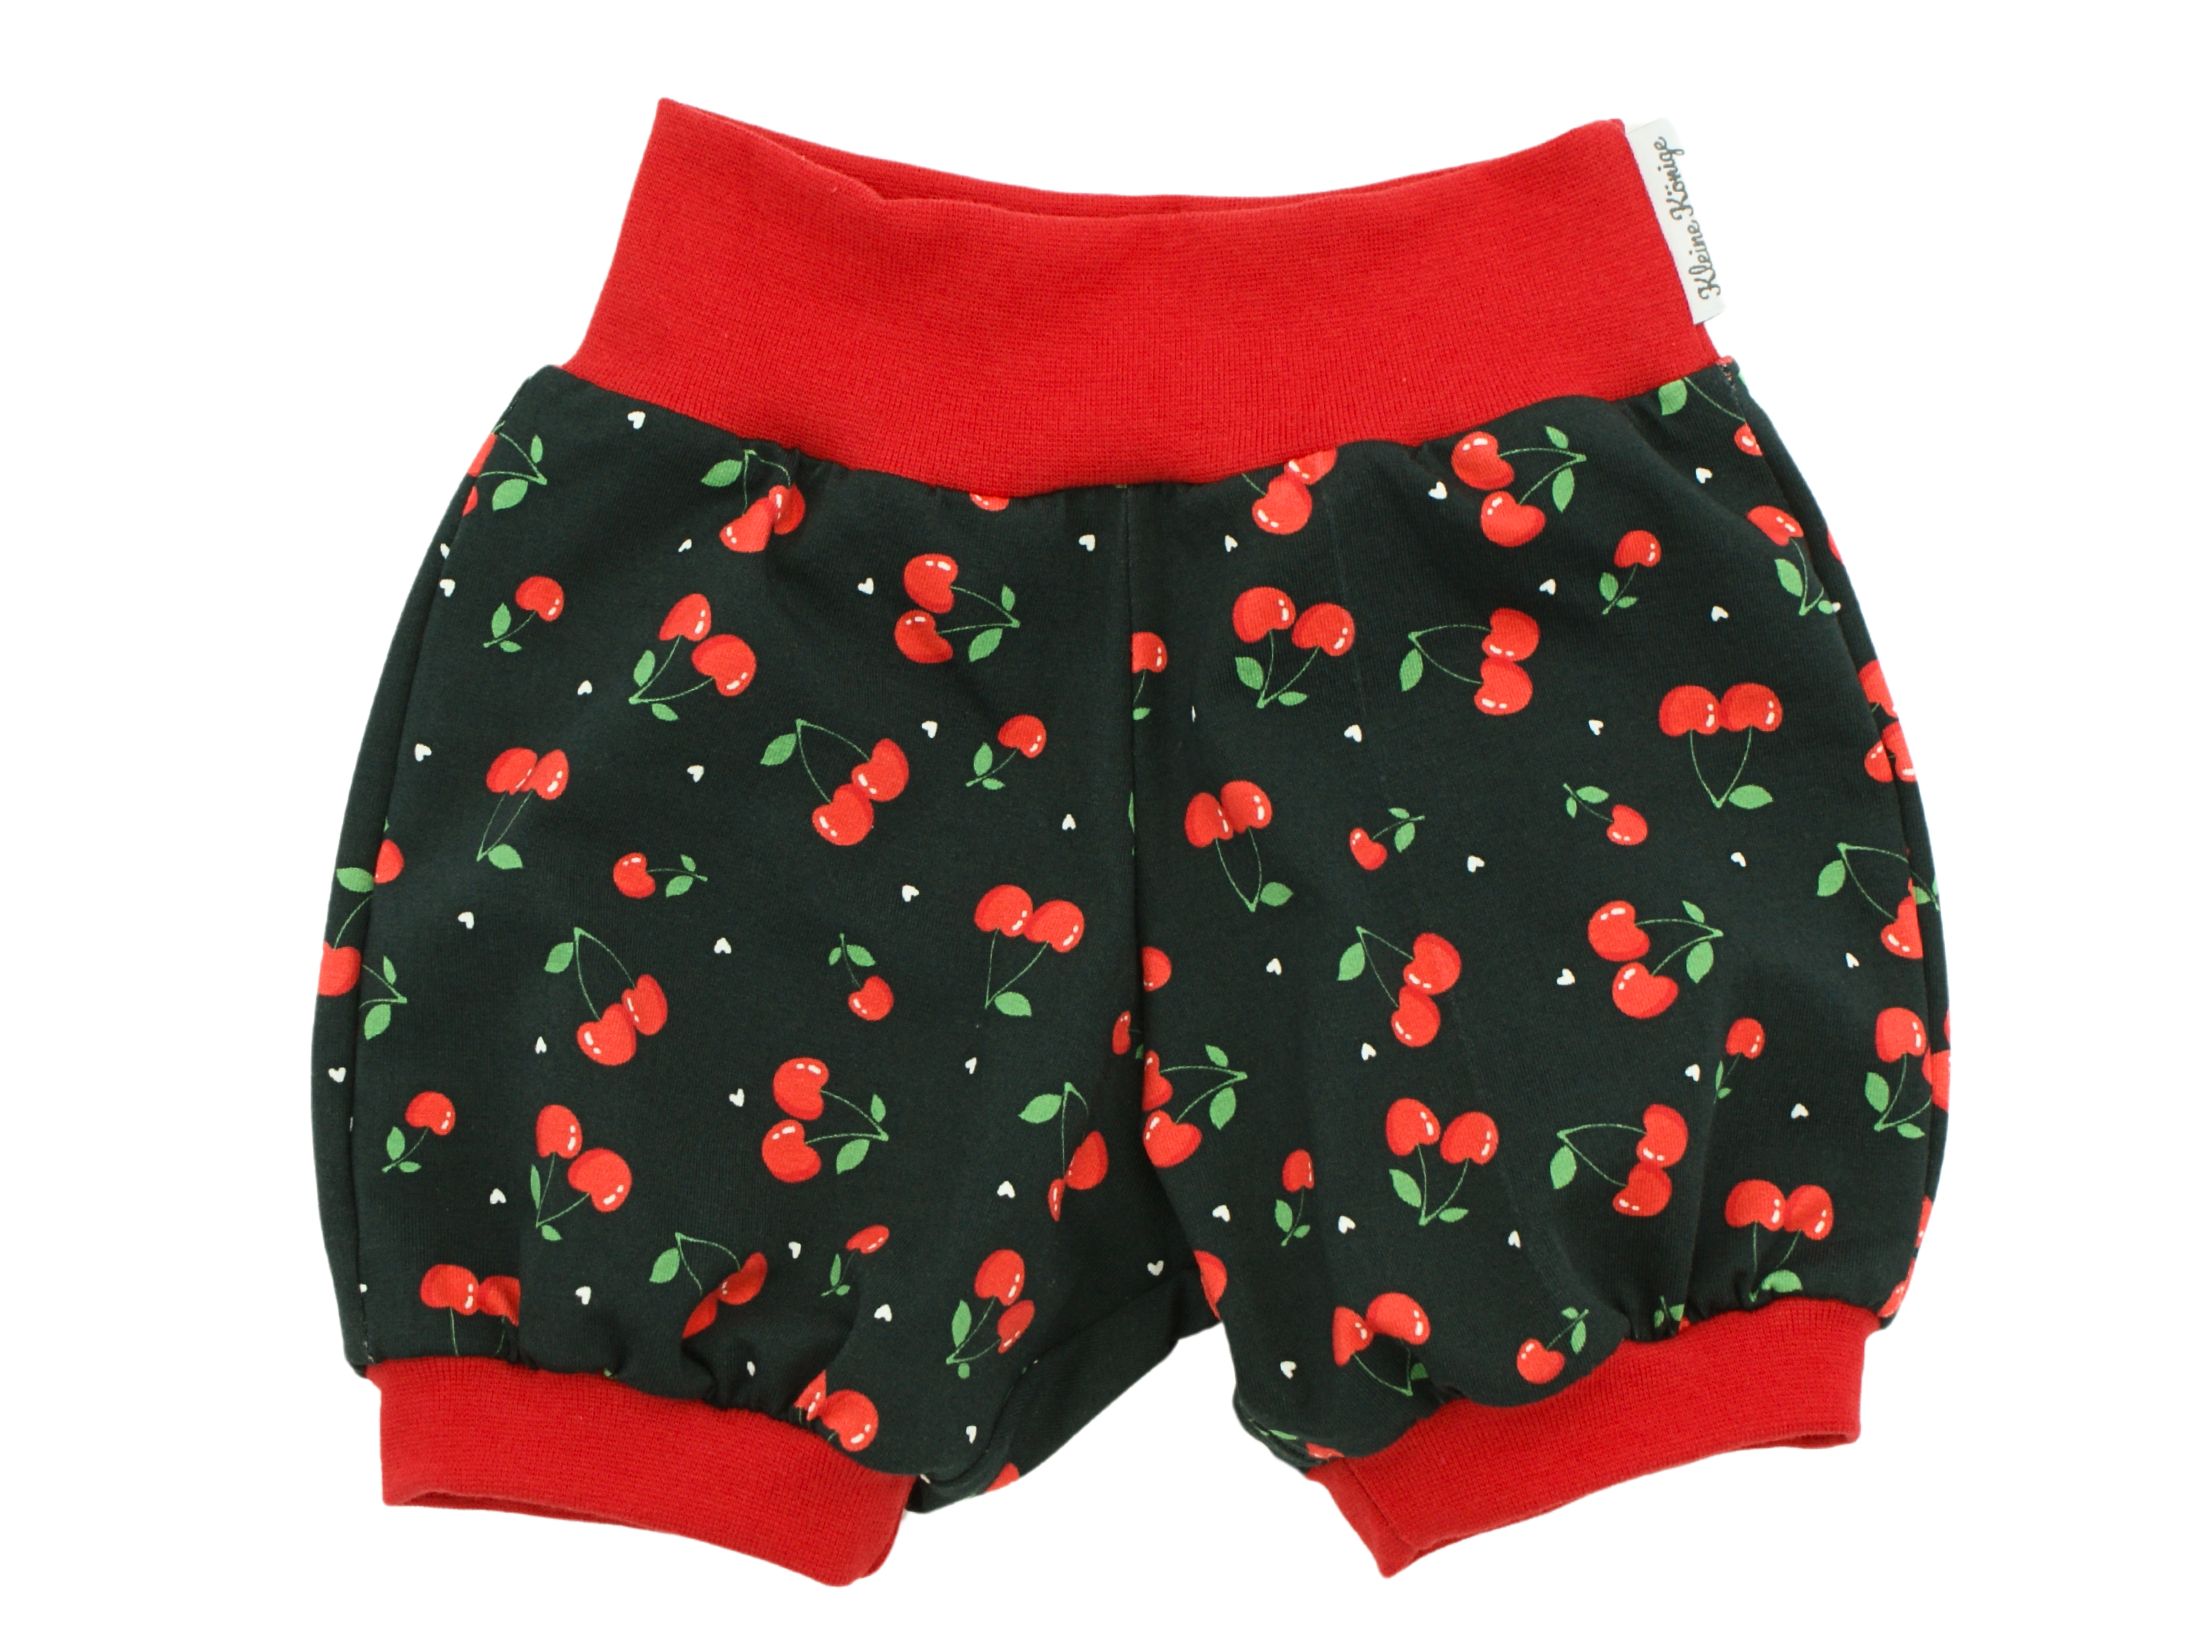 Kinder Sommer Shorts "Minikirschen" schwarz rot